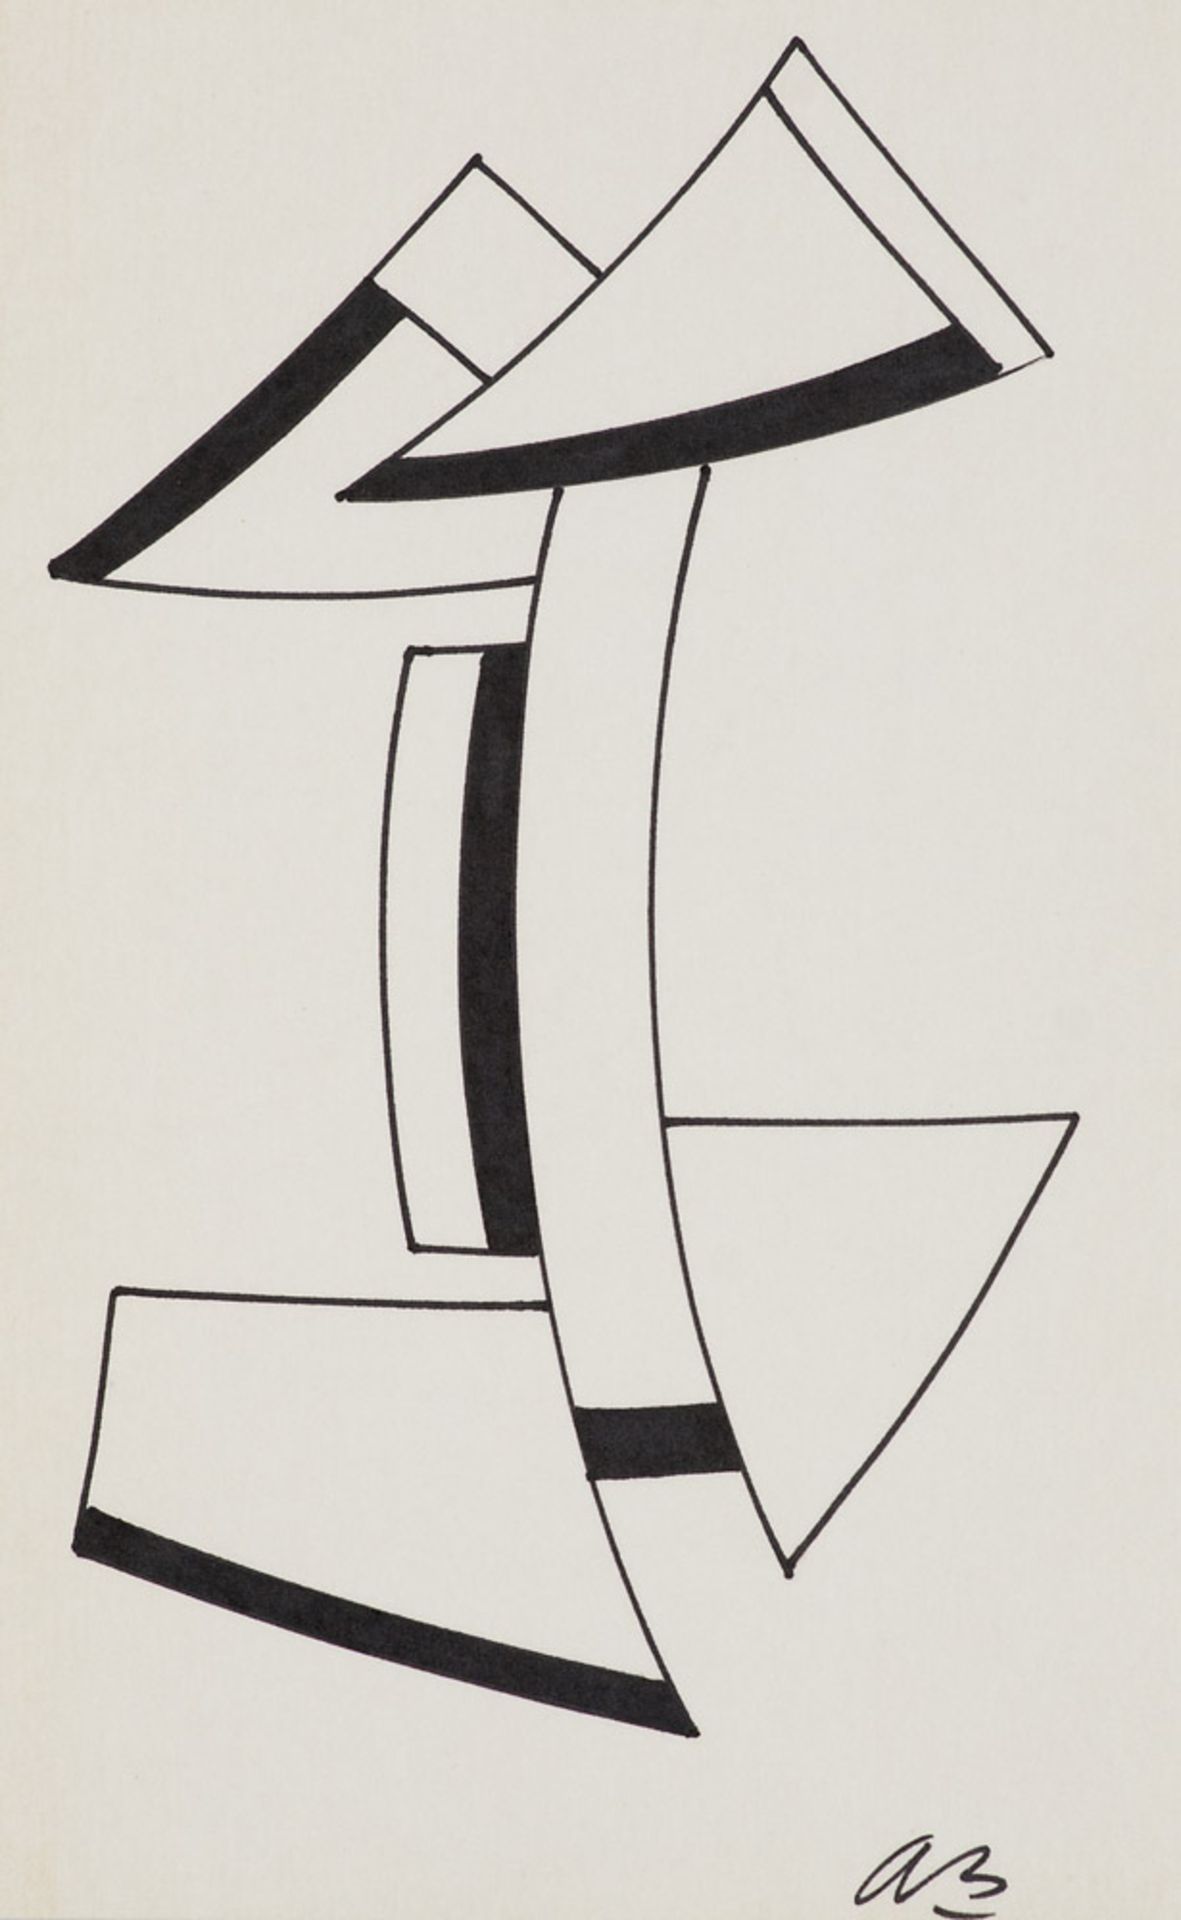 Béöthy-Steiner, Anna. o.T. (Abstrakte geometrische Komposition) (1966). Filzstiftzeichnung auf